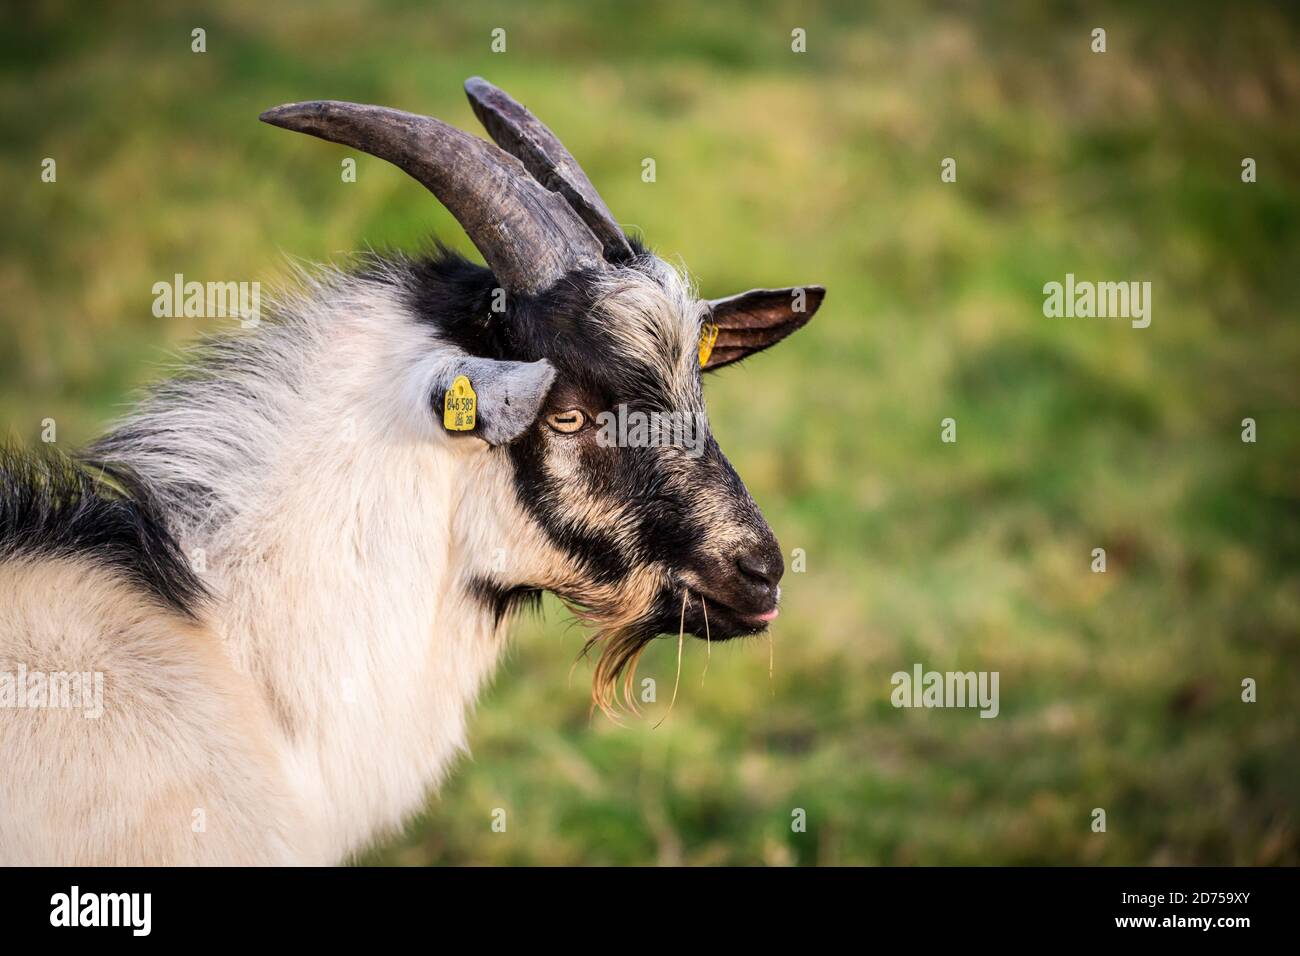 Cabra de cabra de pavo real (cabra de billy), una raza de cabra en peligro de extinción de Austria (Pfauenziege) Foto de stock